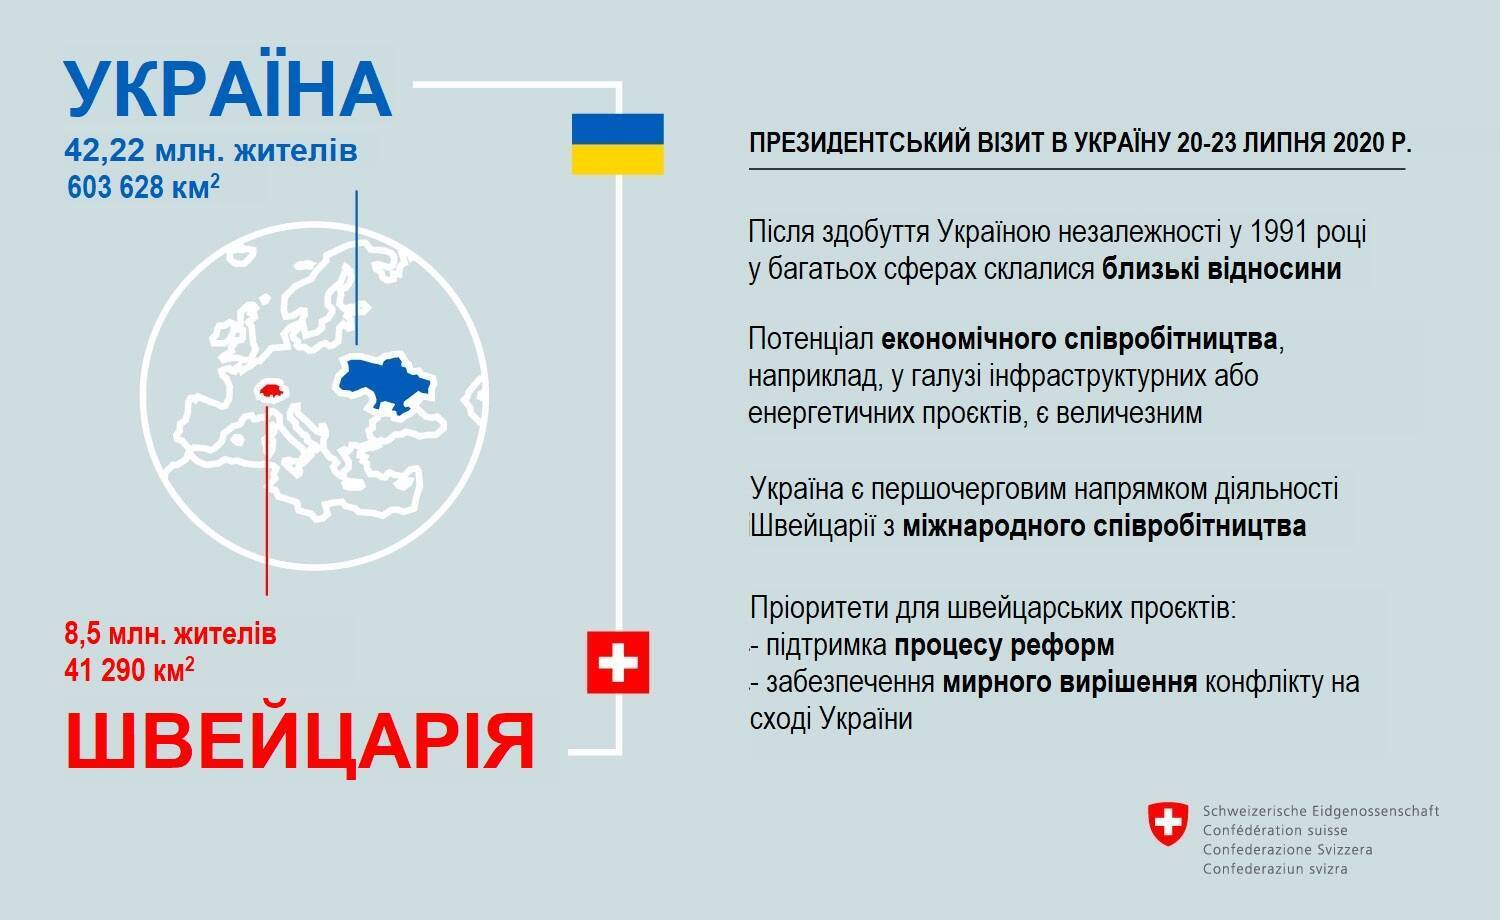 Facebook посольства Швейцарии в Украине